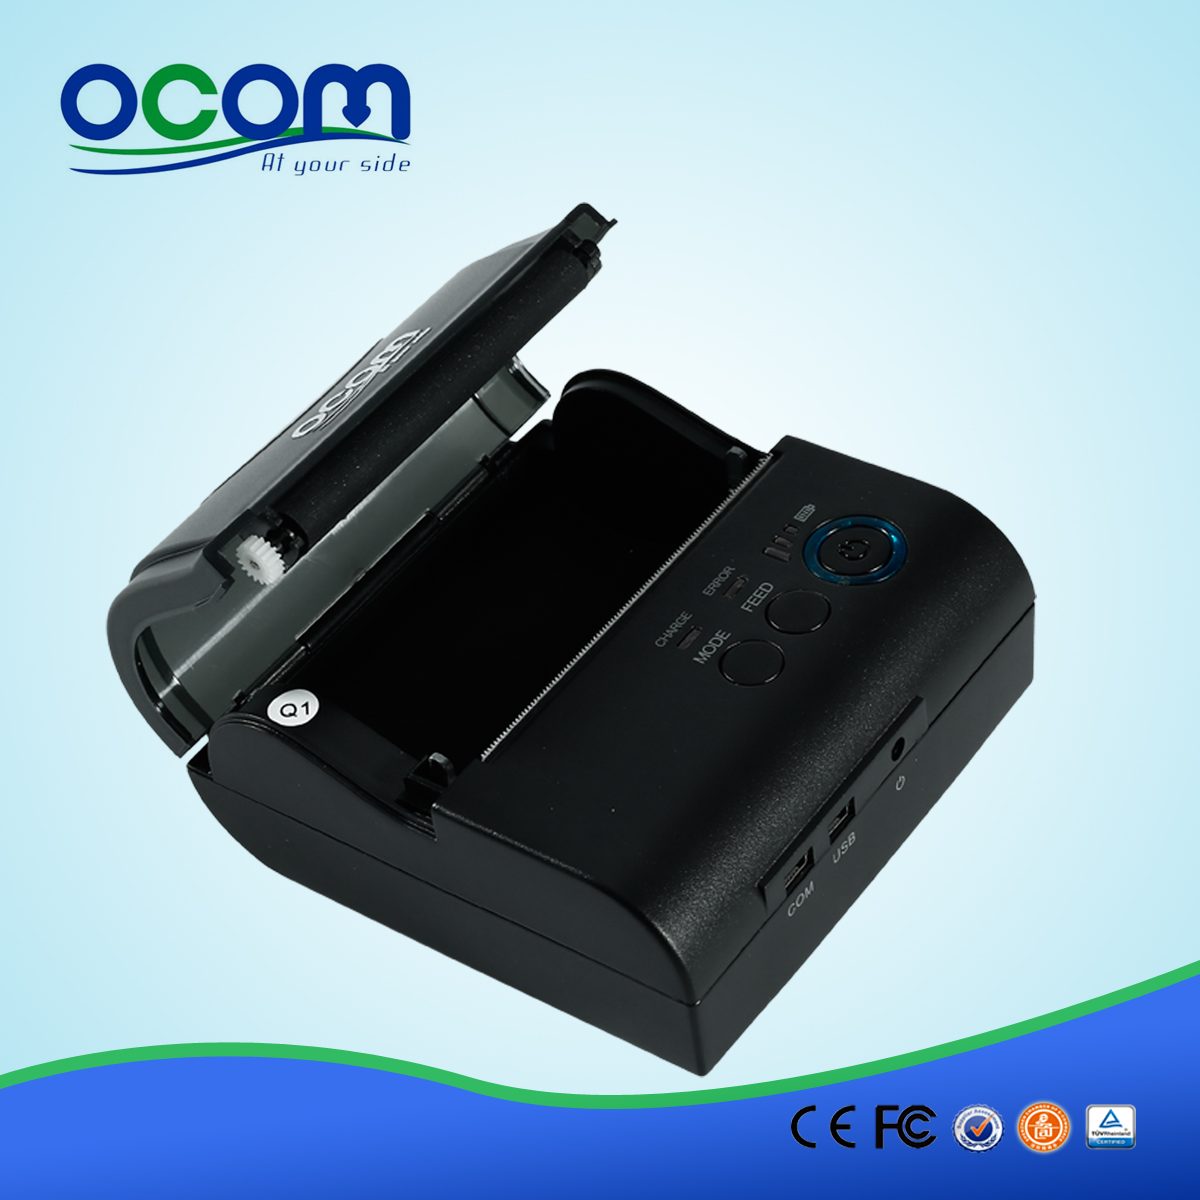 OCPP-M082: vendita OCOM calda stampante termica 80 millimetri a buon mercato